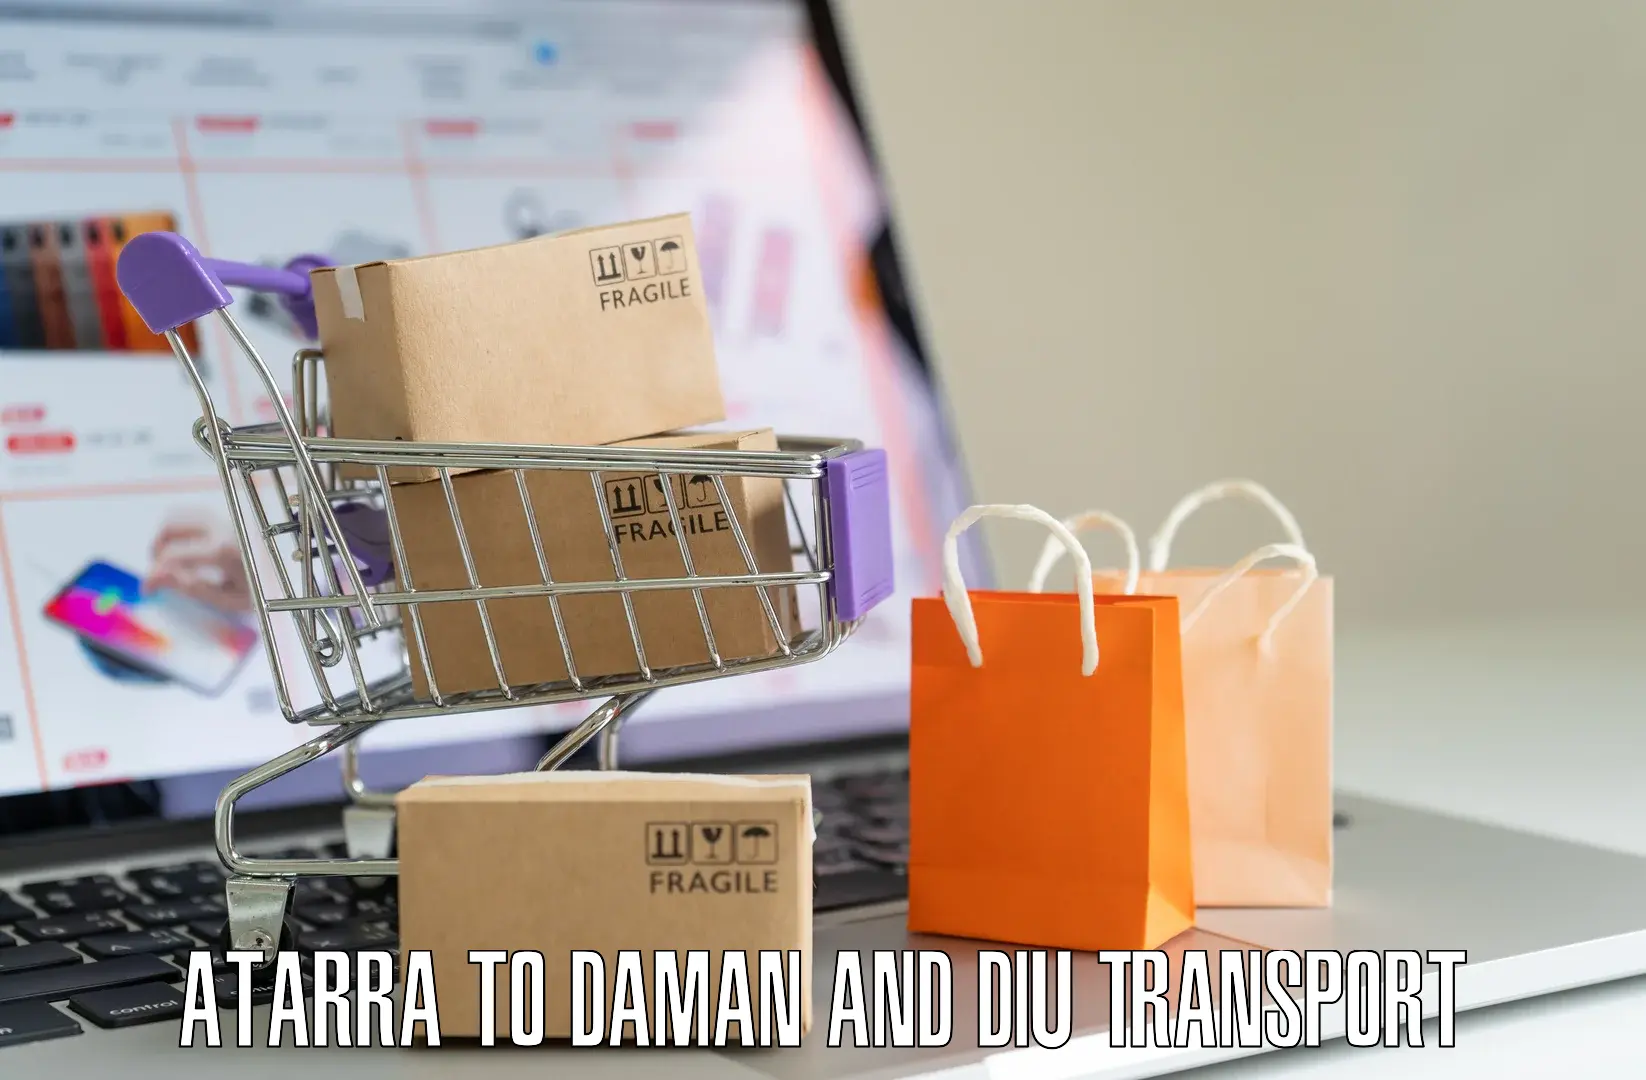 Furniture transport service Atarra to Diu